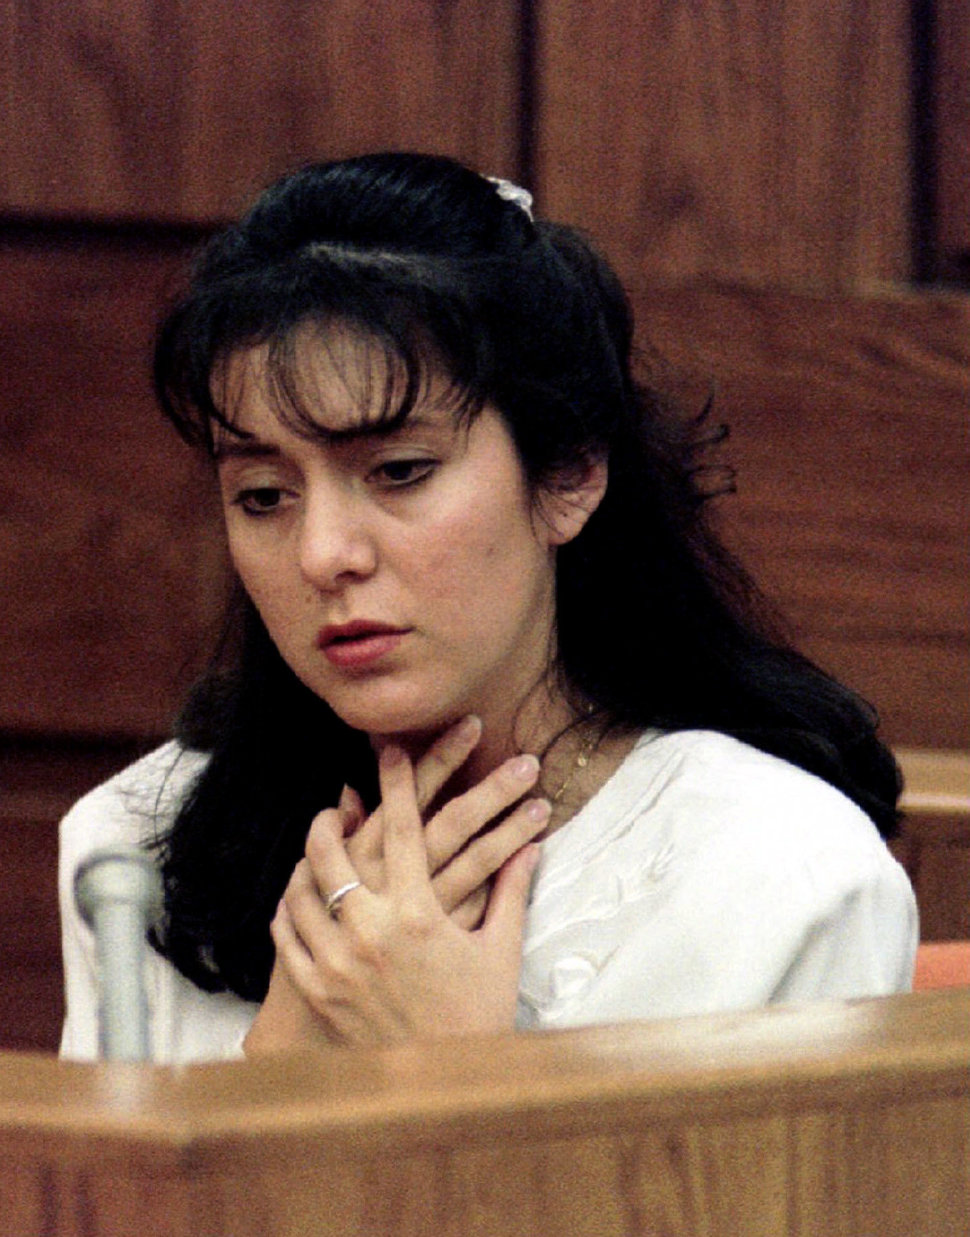 Bobbitt in court in Manassas, Virginia, in January 1994, describing how her husband choked her.